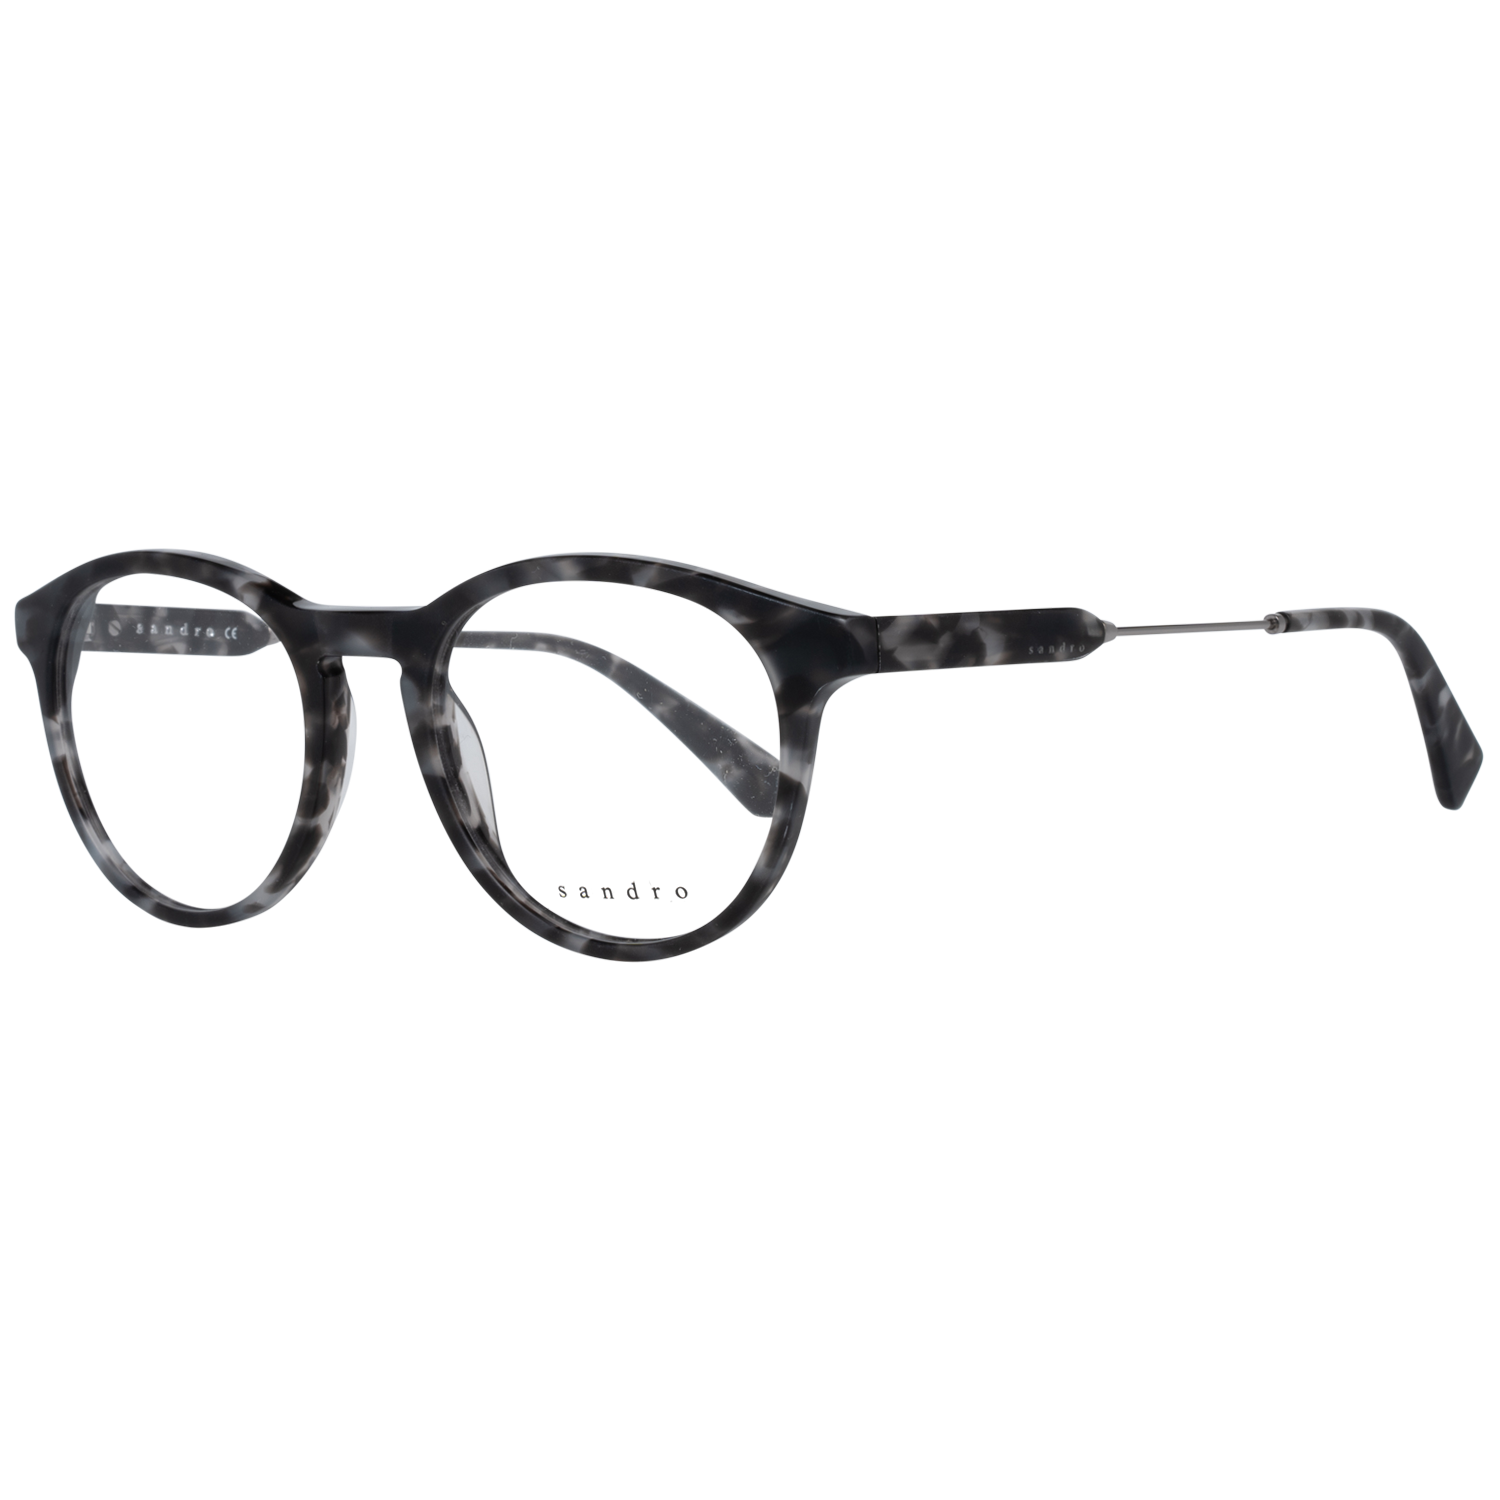 Sandro Frames Sandro Optical Frame SD1008 207 50 Eyeglasses Eyewear UK USA Australia 